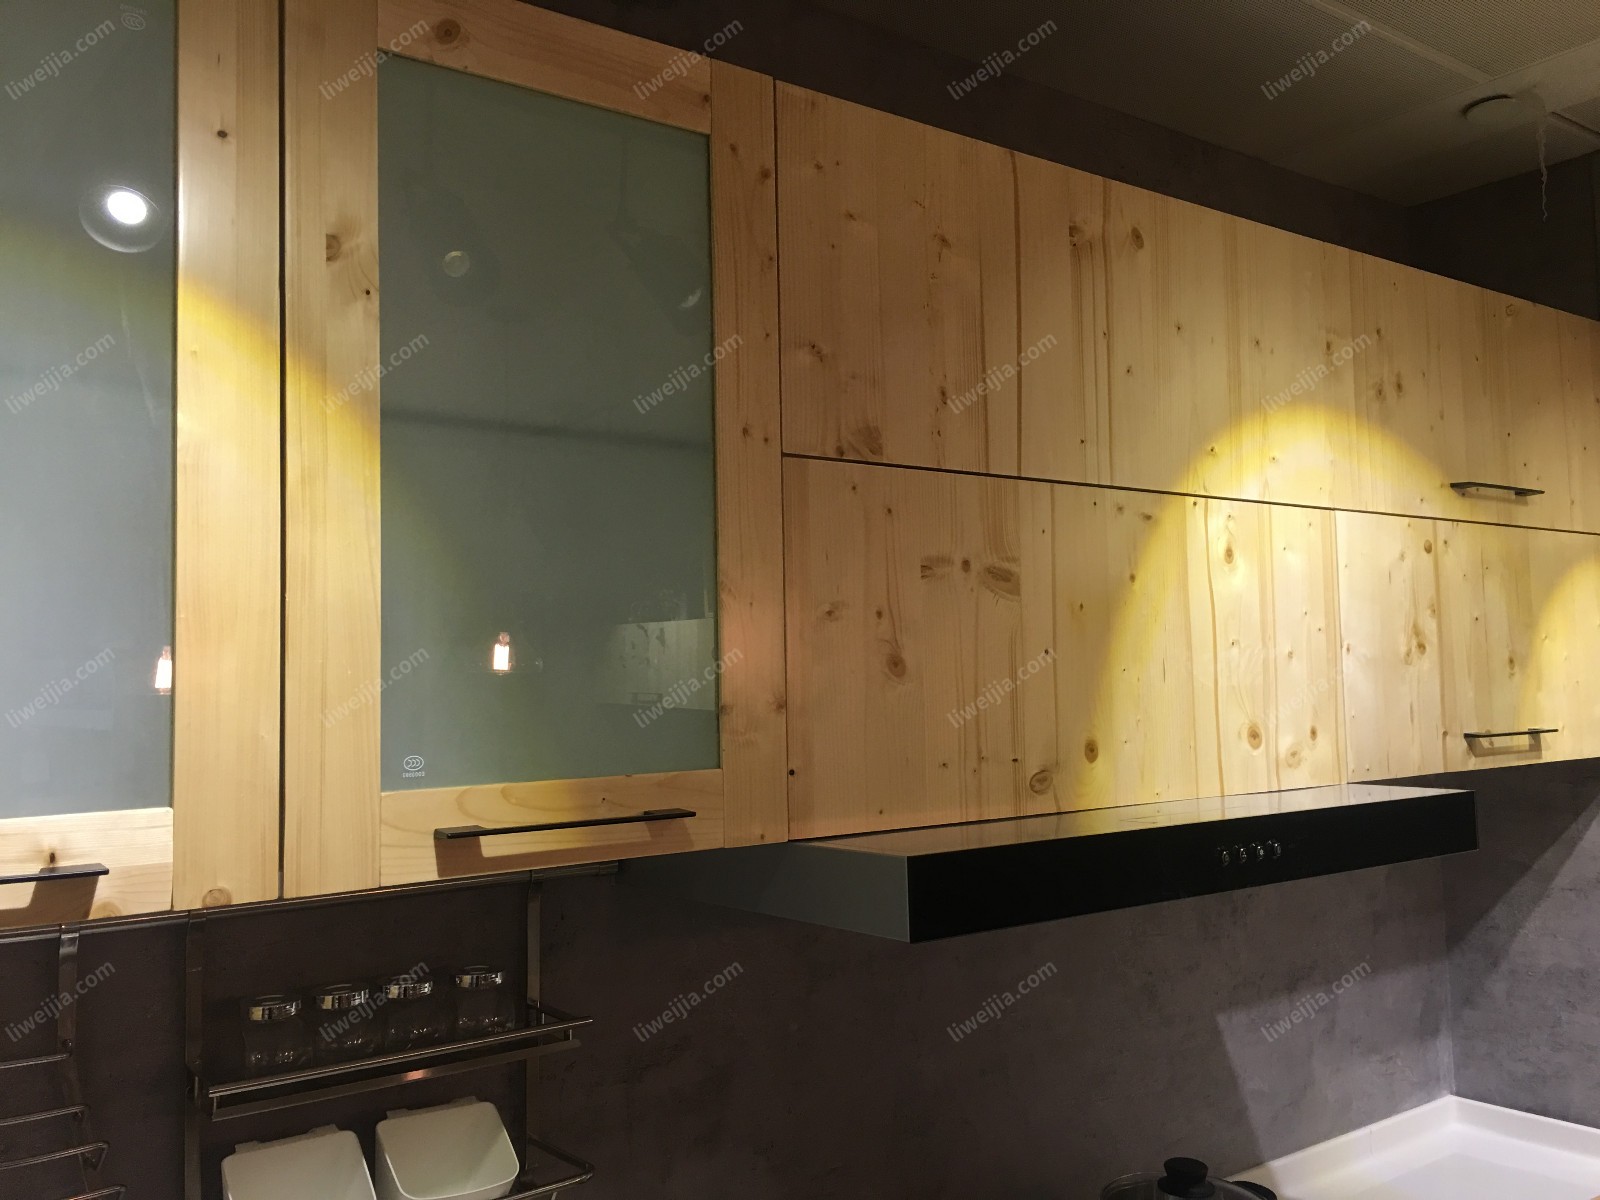 除了板材自身的特点之外，“维达尔”在设计上也相当下工夫，例如在普通上翻门吊柜的基础上加入毛玻璃门板设计。